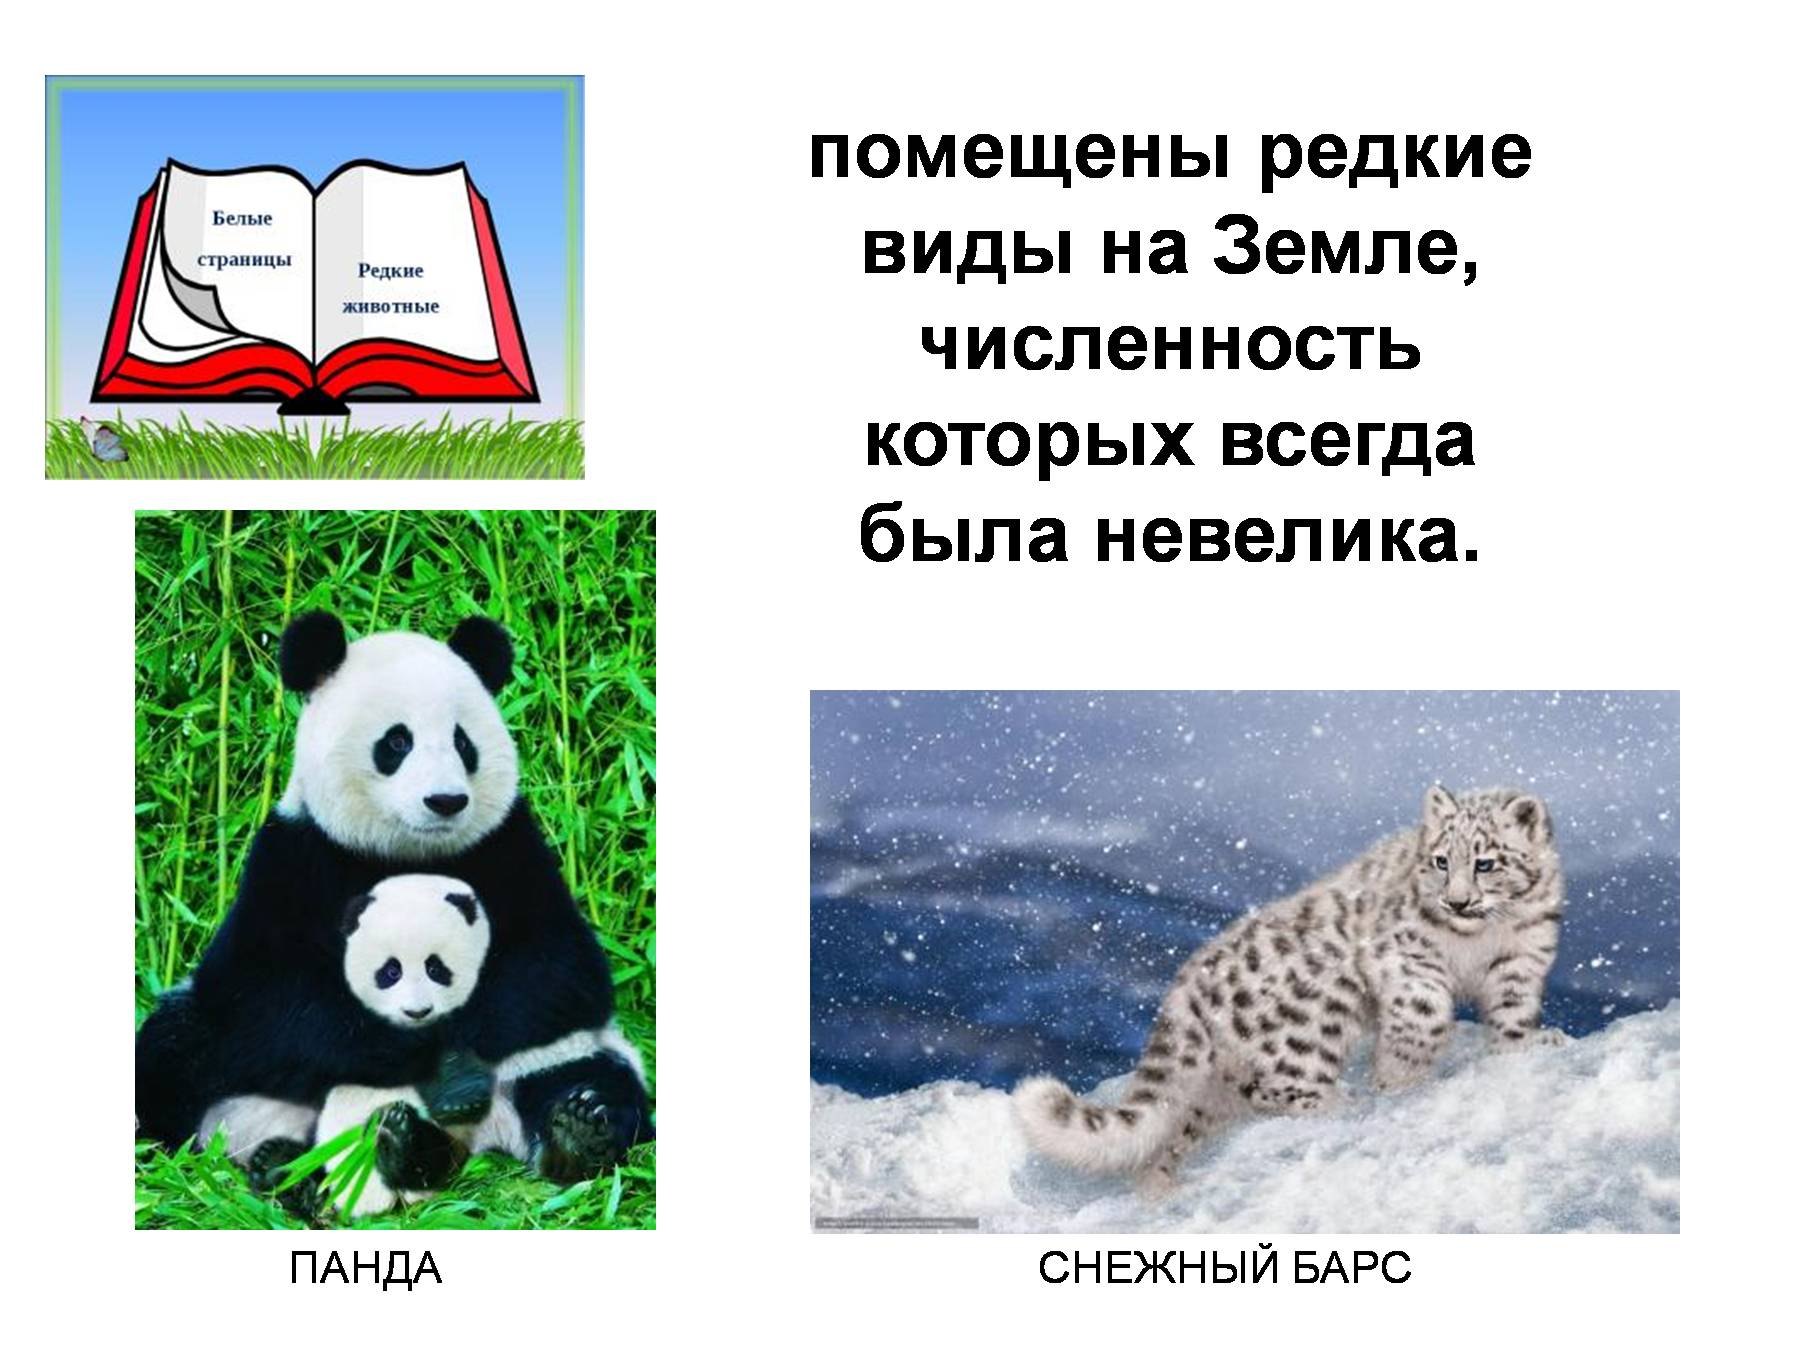 Белые страницы красной книги России